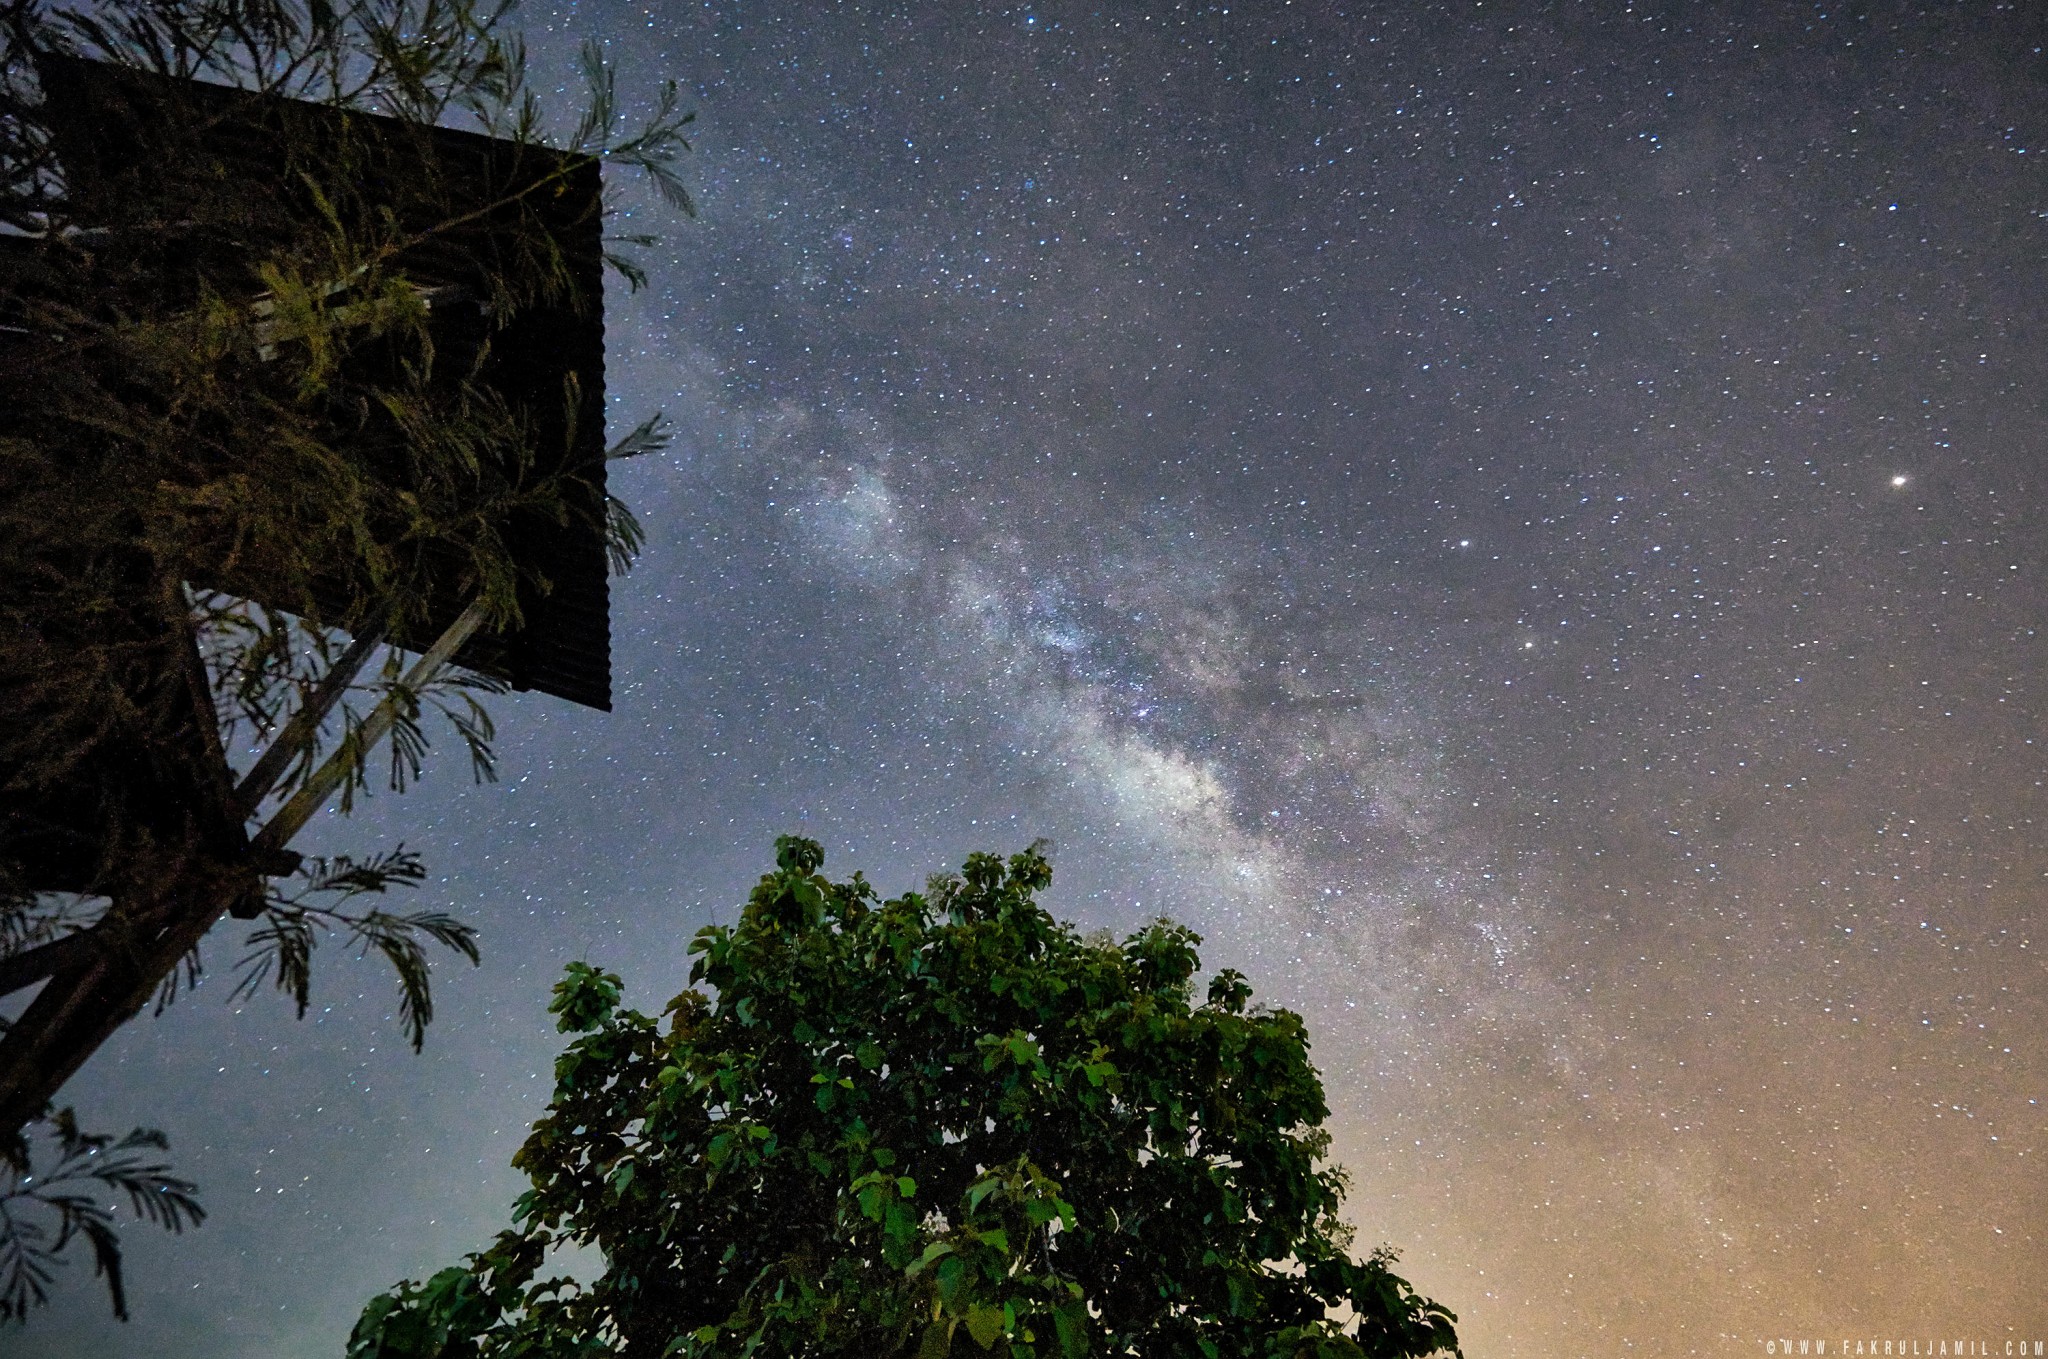 Milky Way above the Tree | Sony A7R Mark II + FE 16-35mm F4 ZA OSS